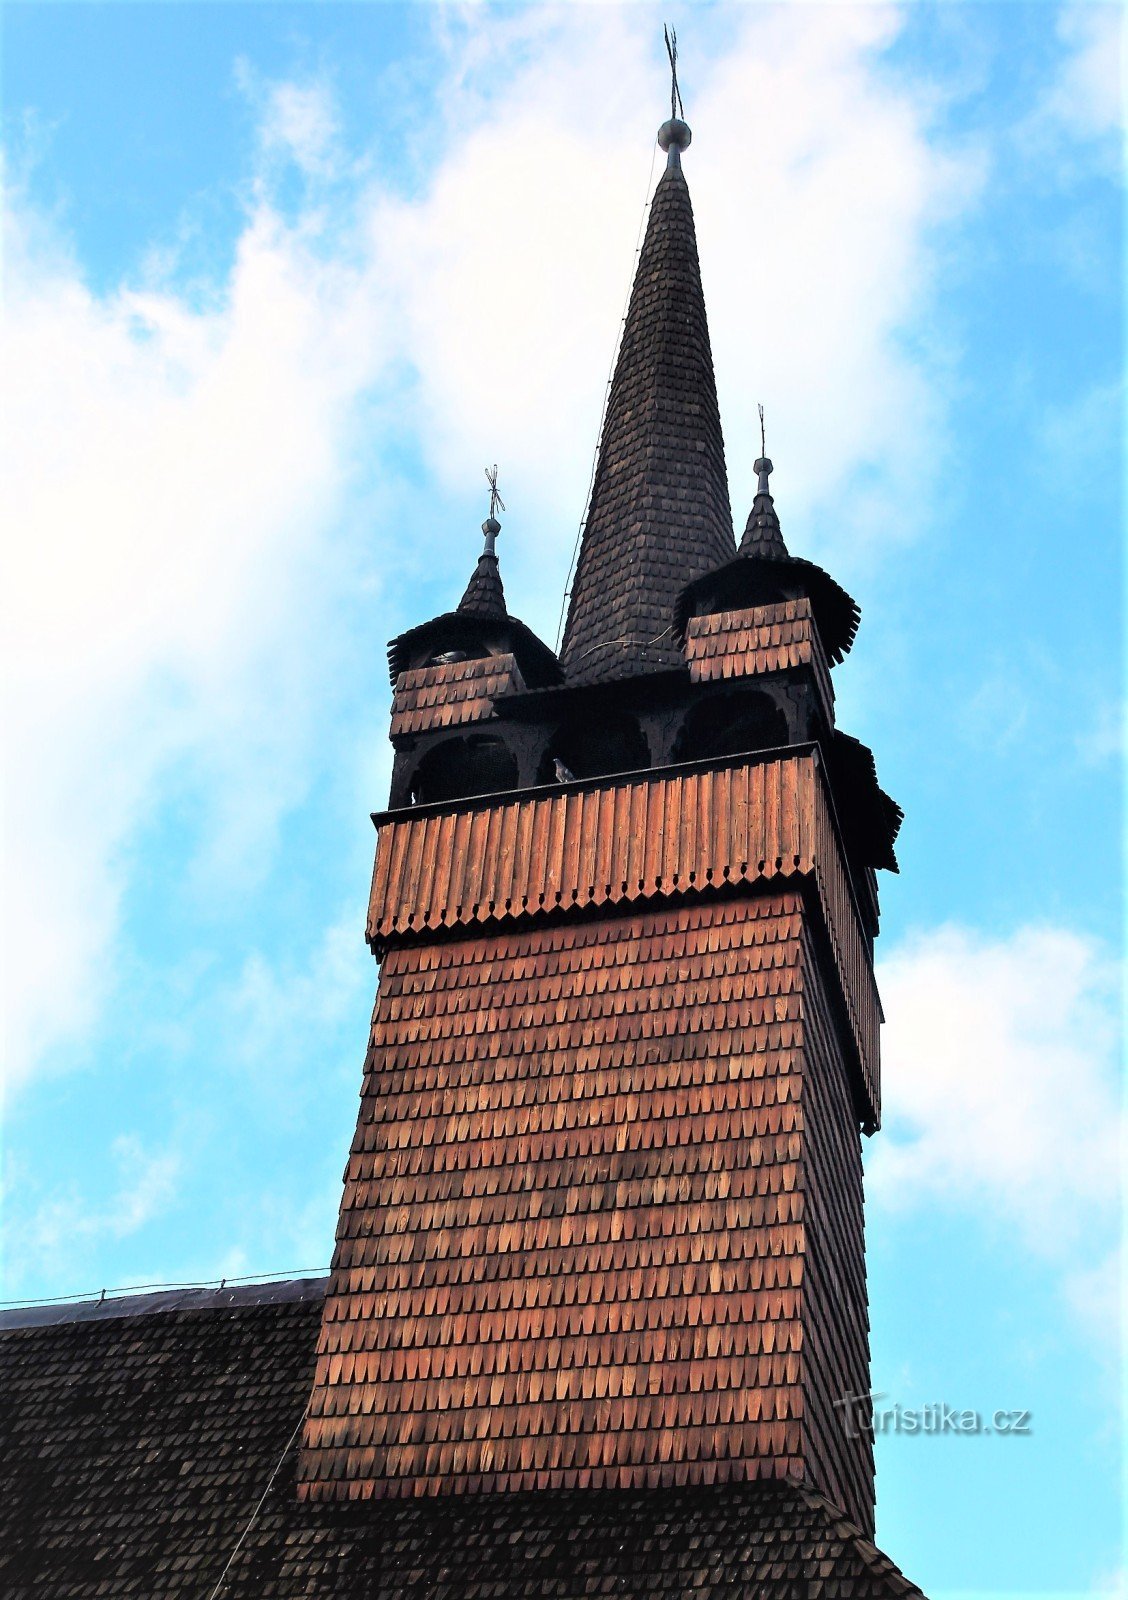 Una torre de iglesia de cuatro lados con techo cónico con cuatro torres de esquina